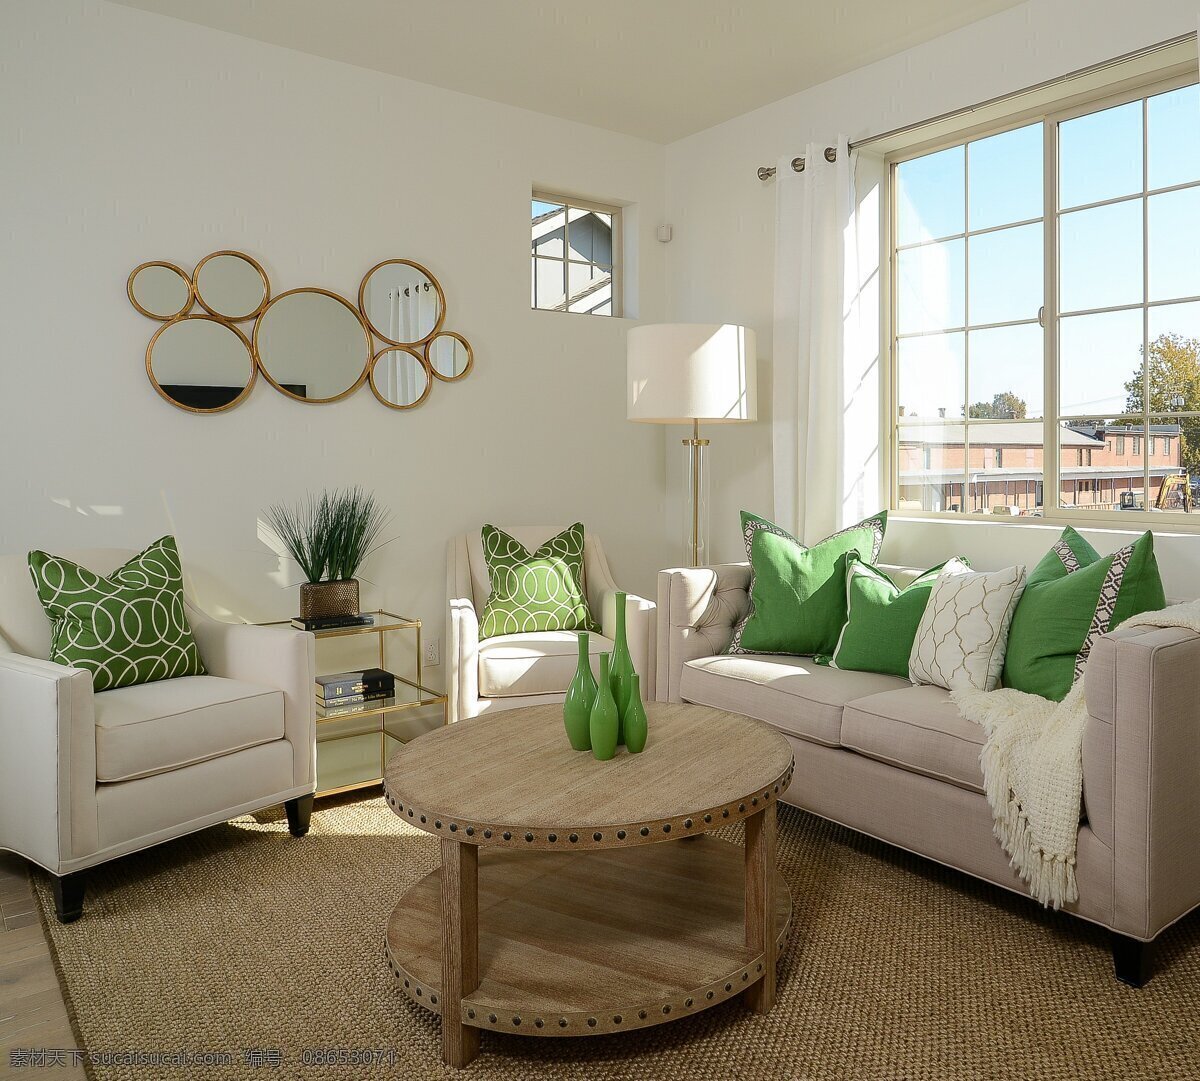 现代 清新 文艺 客厅 绿色 抱枕 室内装修 效果图 白色沙发 褐色地毯 客厅装修 浅色背景墙